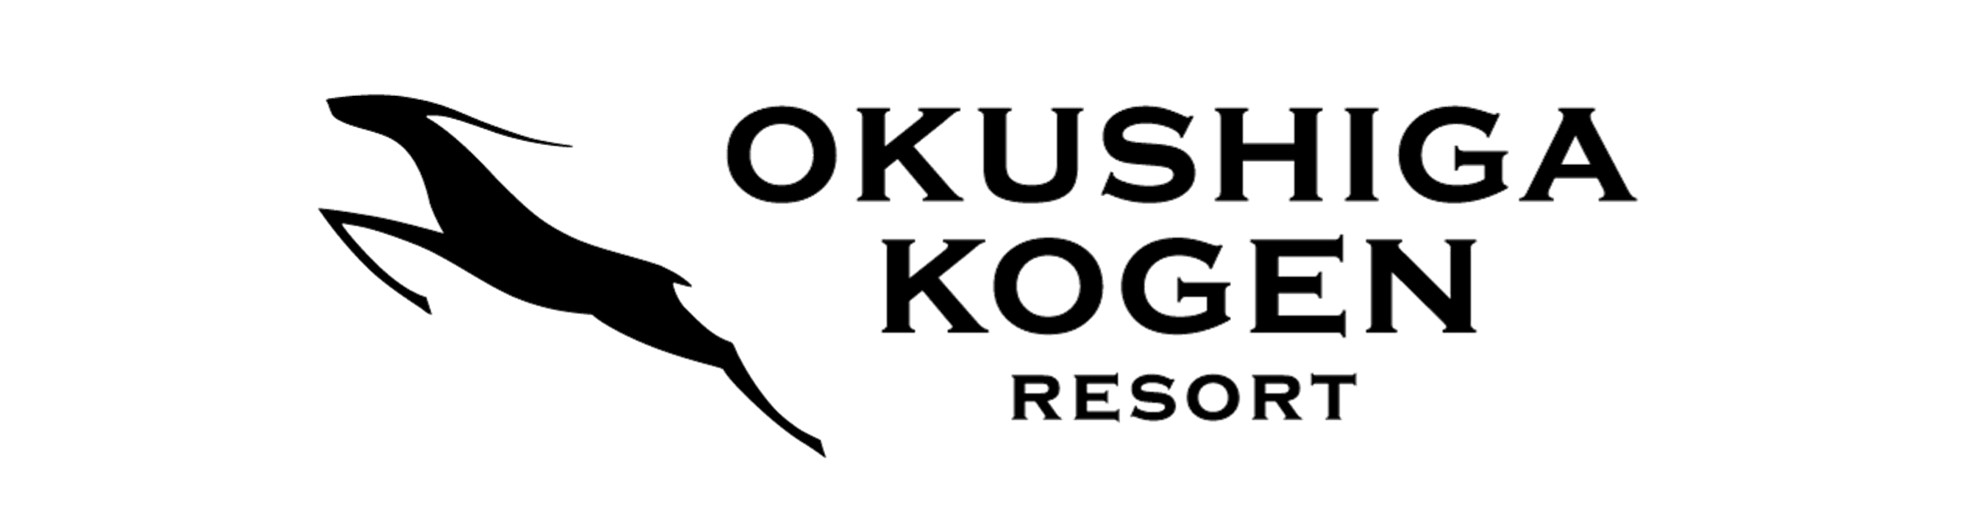 Okushiga Kogen Resort